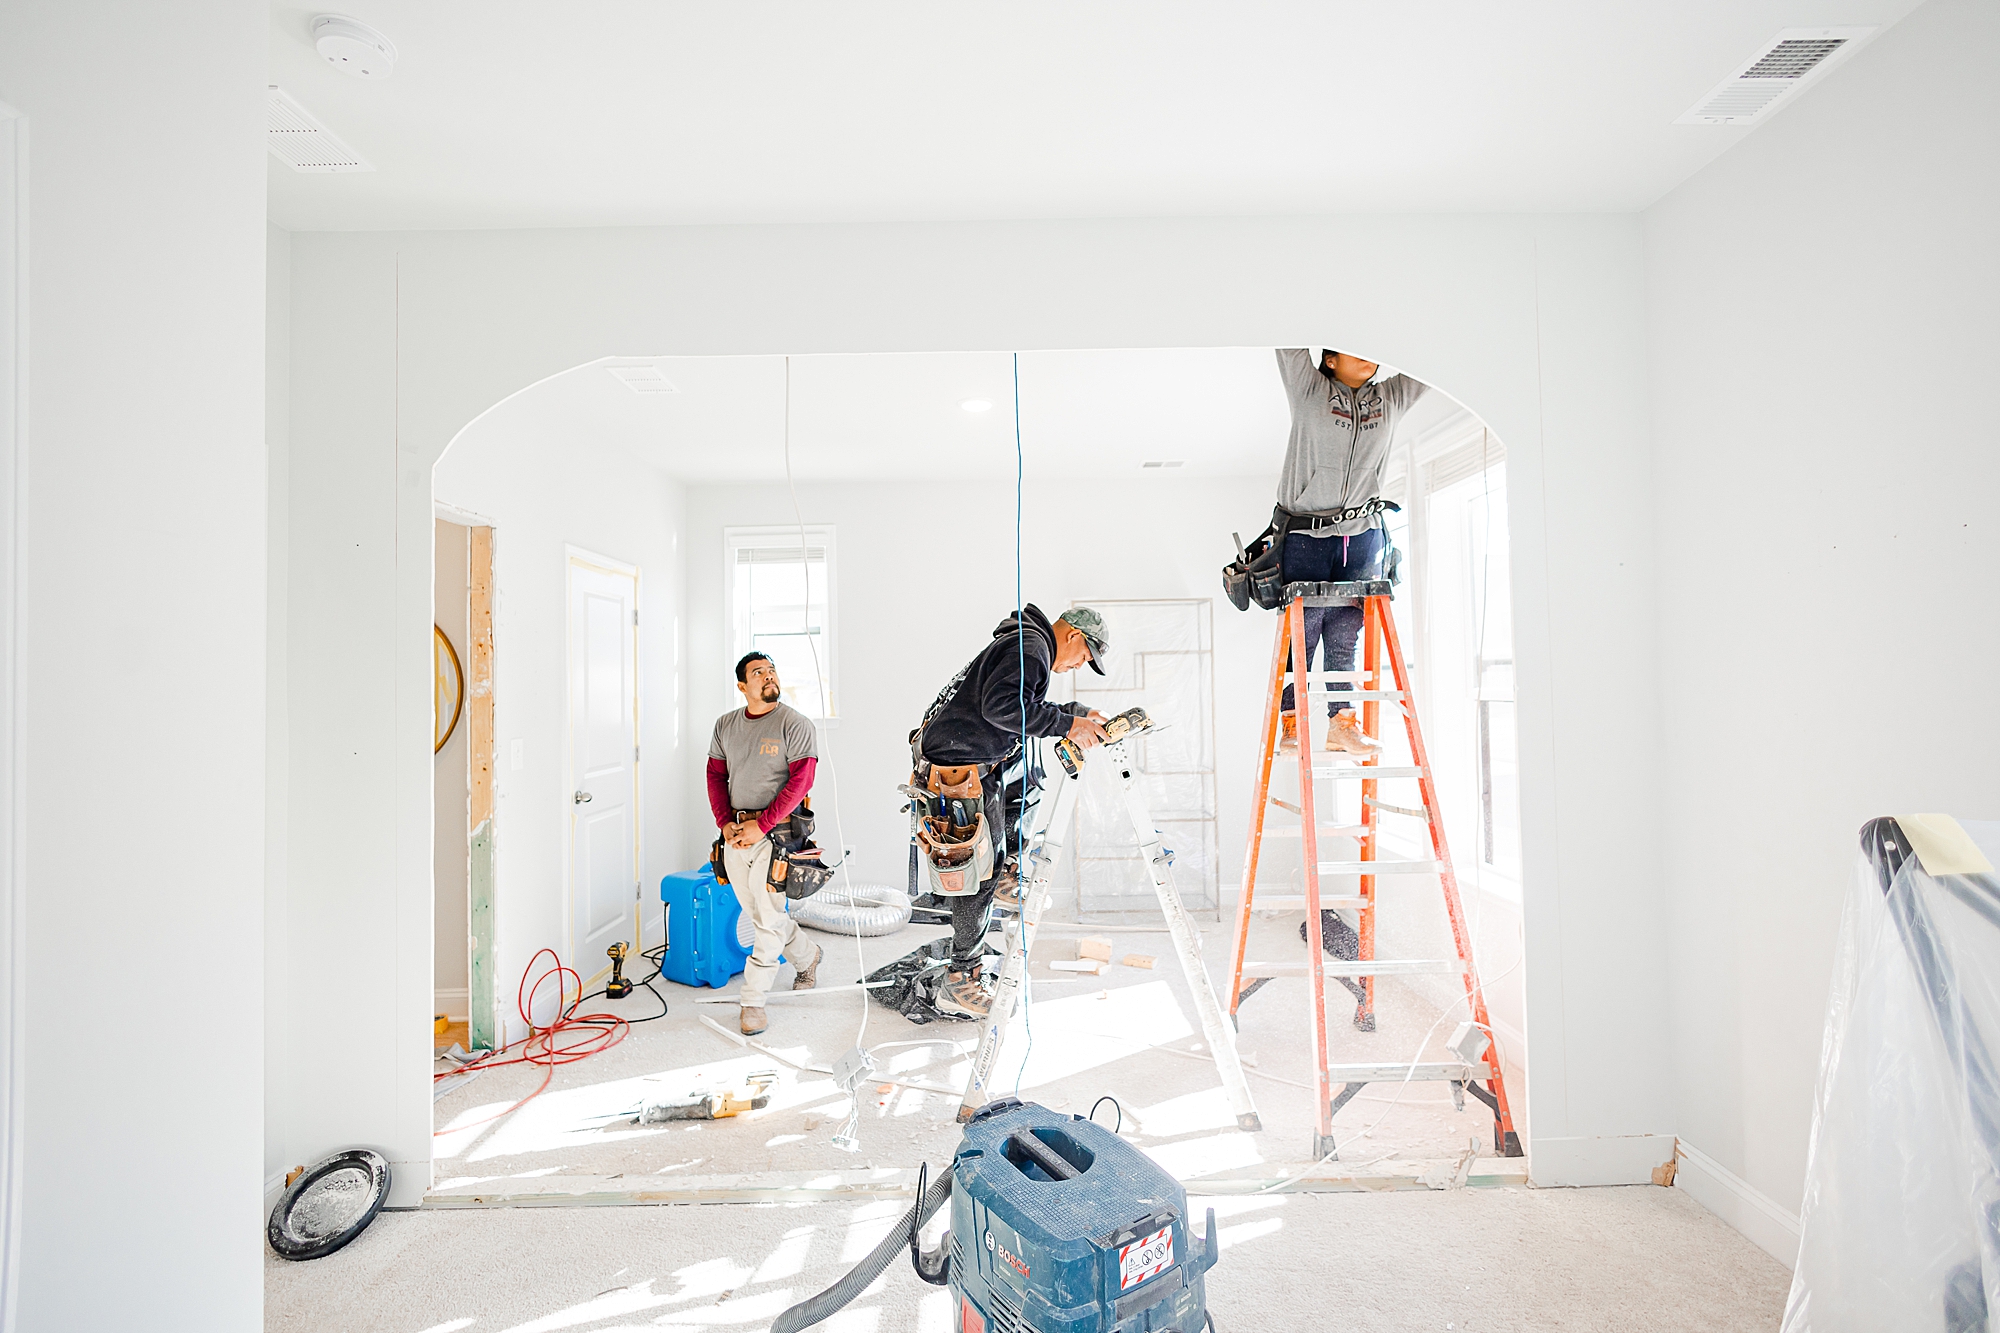 contractors work on molding between rooms 